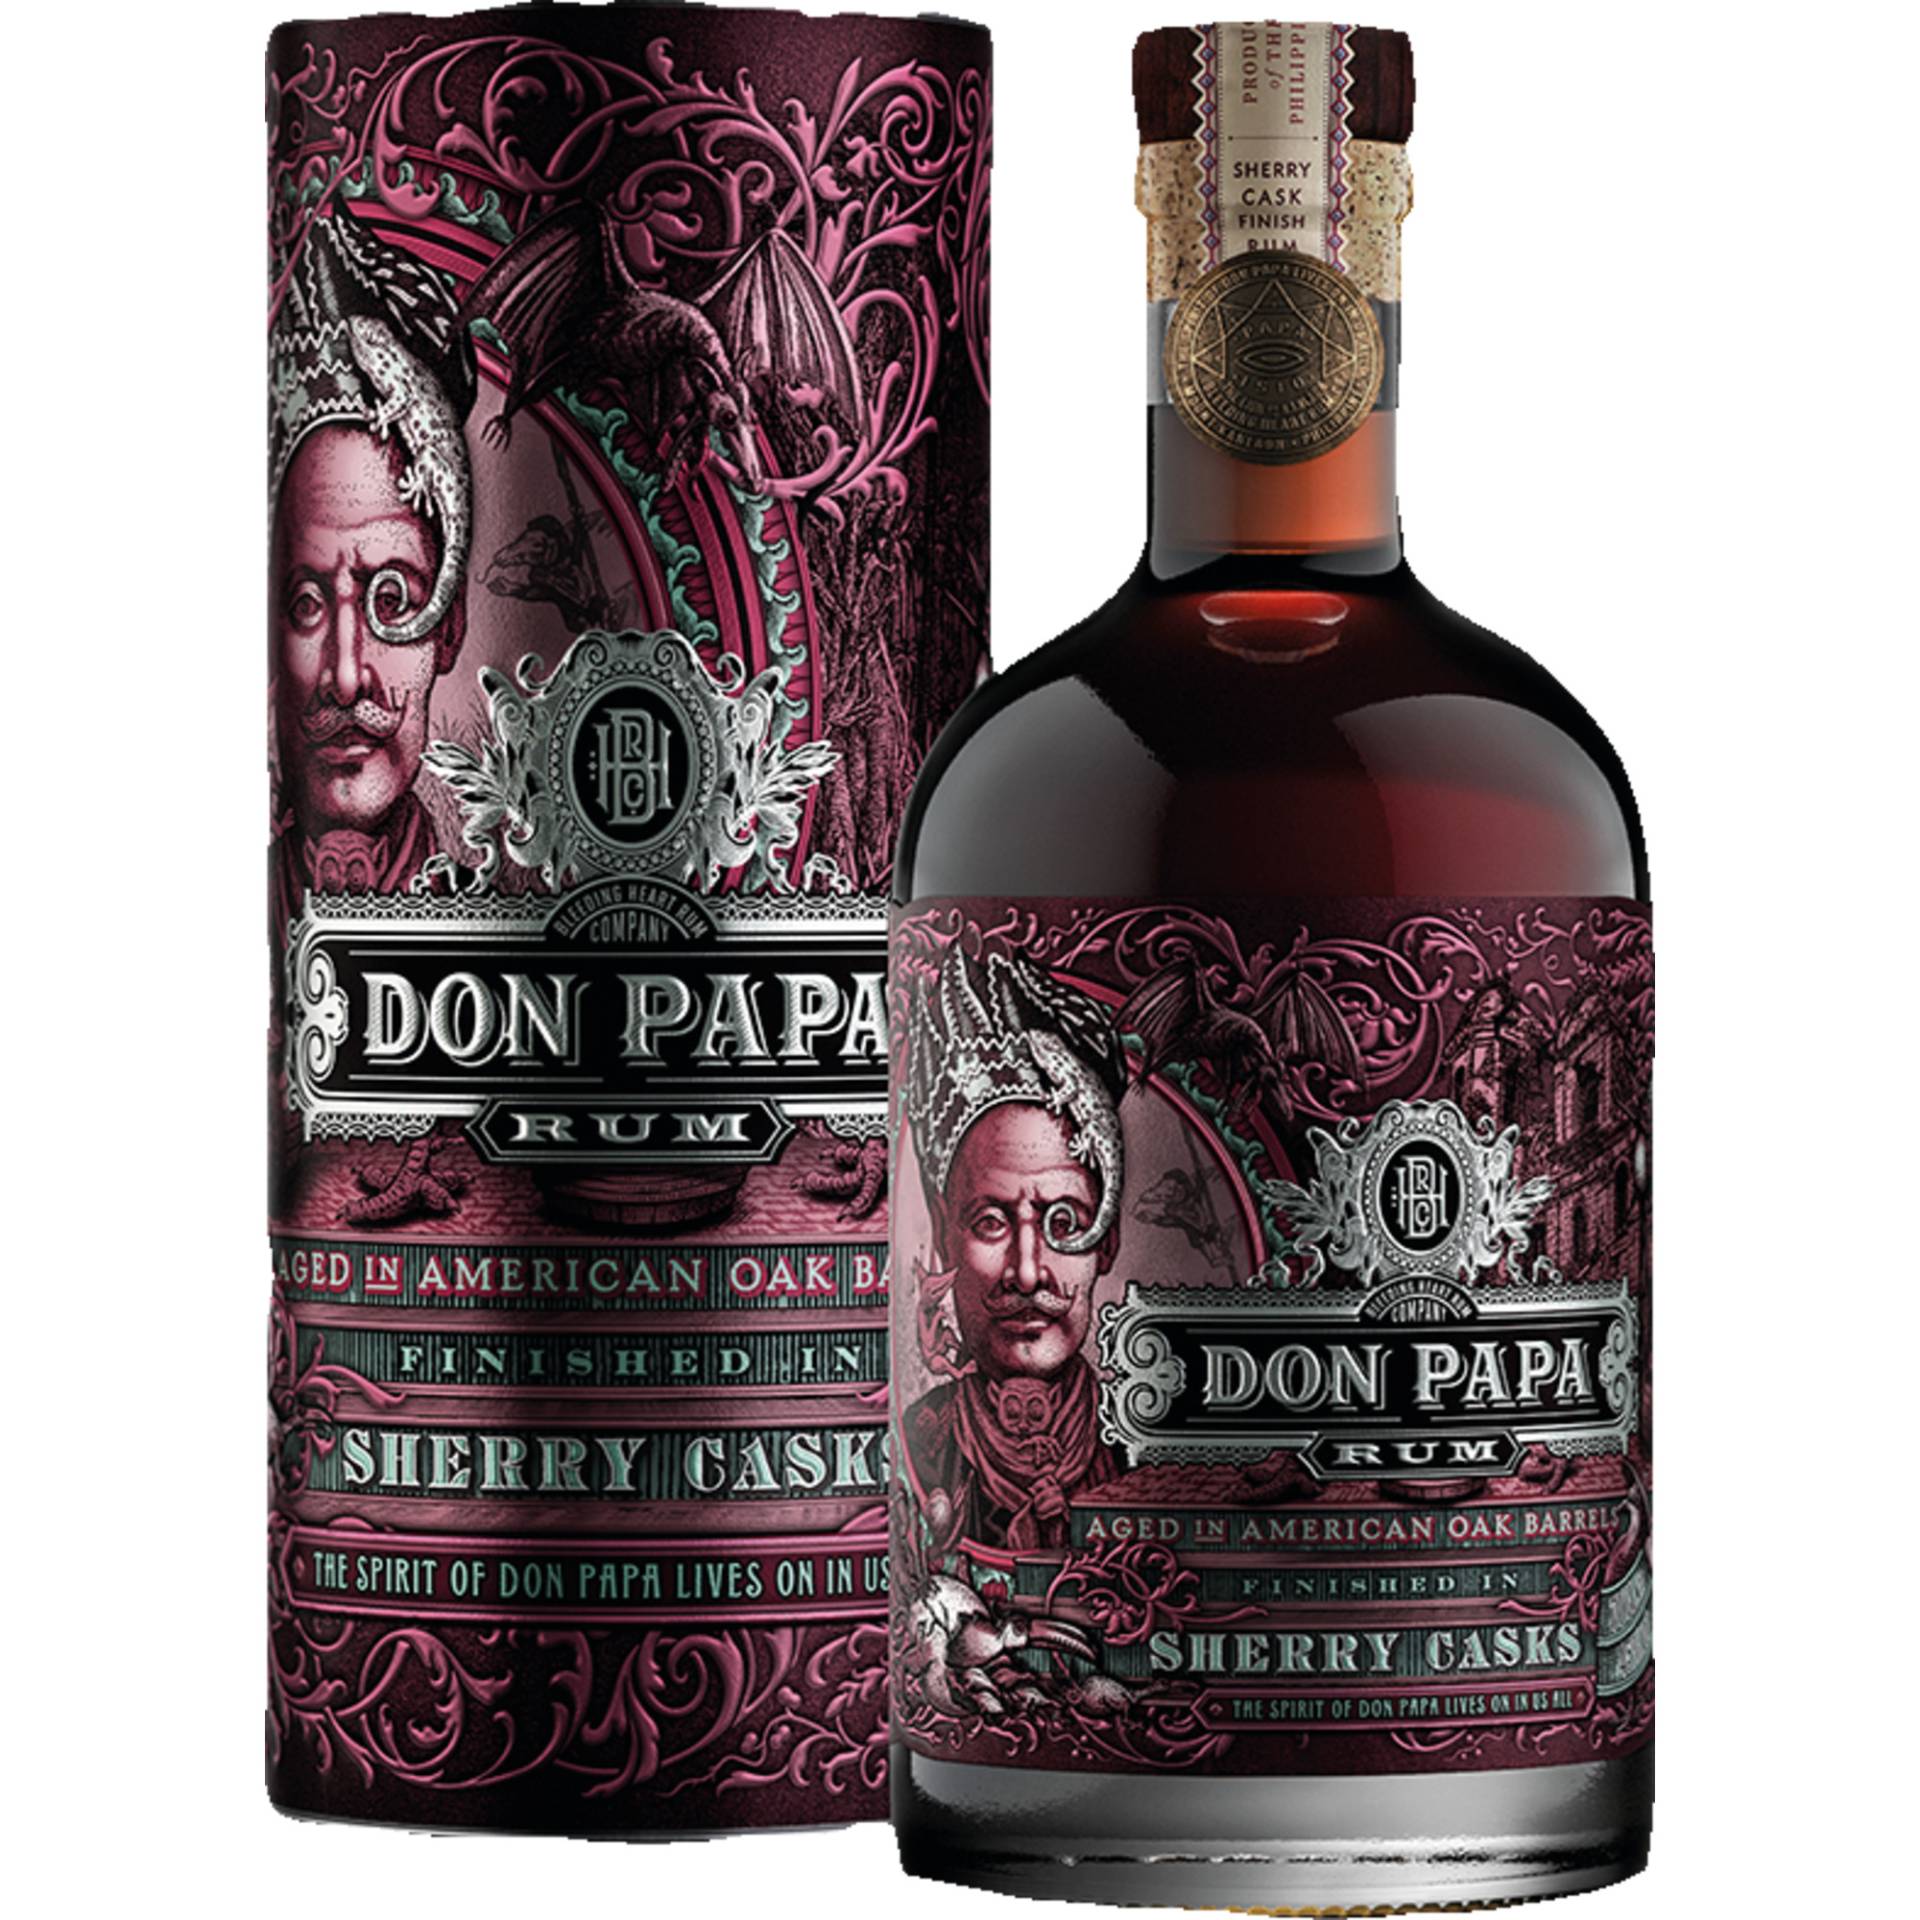 Don Papa Rum finished in Sherry Casks, Negros Philippinen, 0,7 L, 45% Vol.in Geschenkdose, Spirituosen von Sierra Madre GmbH, Rohrstr. 26, 56093 Hagen, Deutschland